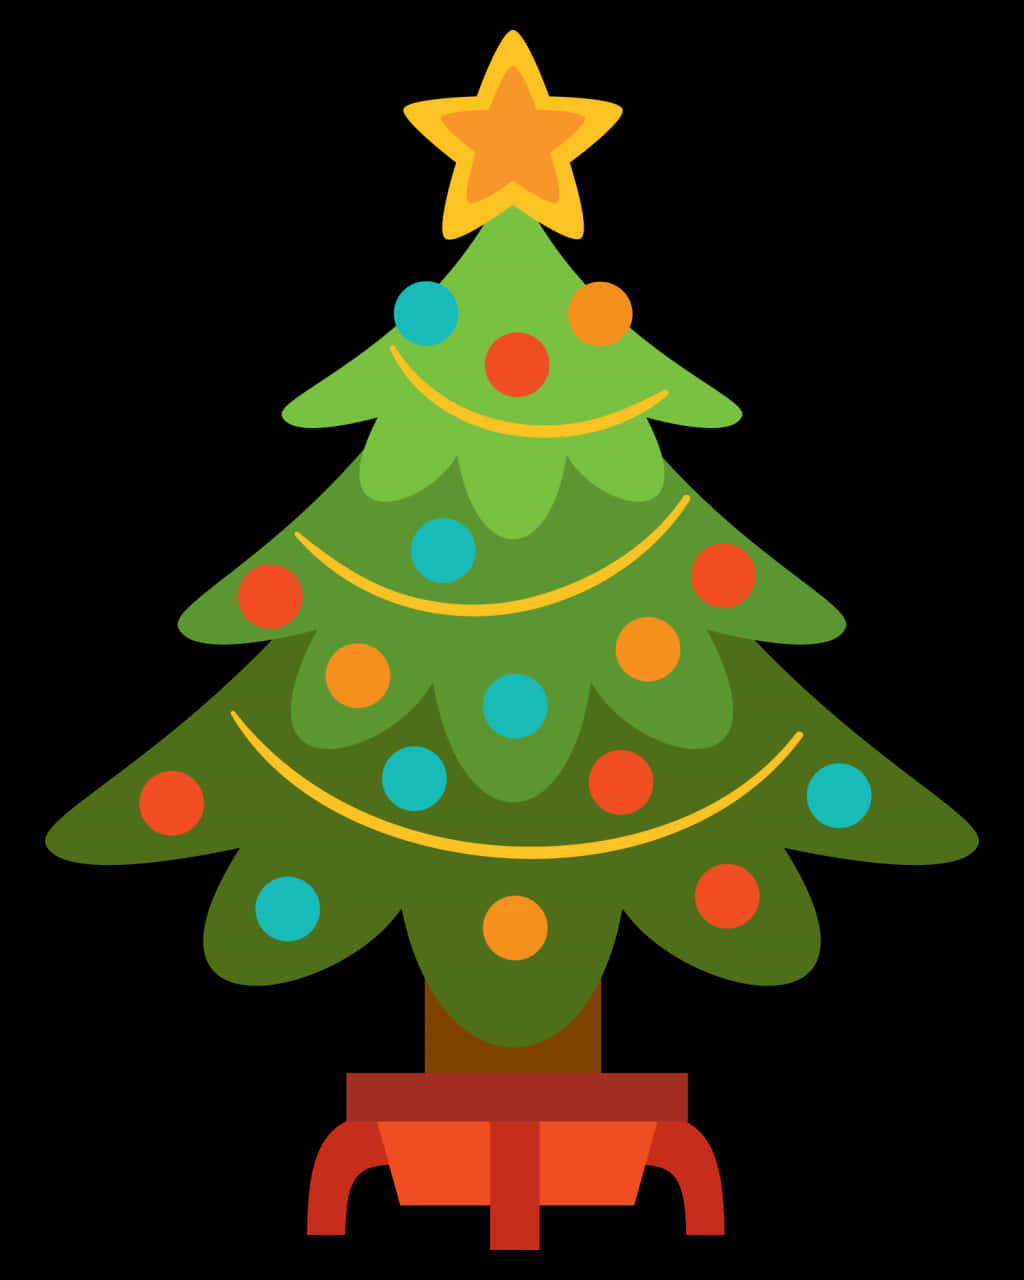 A Cartoon Of A Christmas Tree